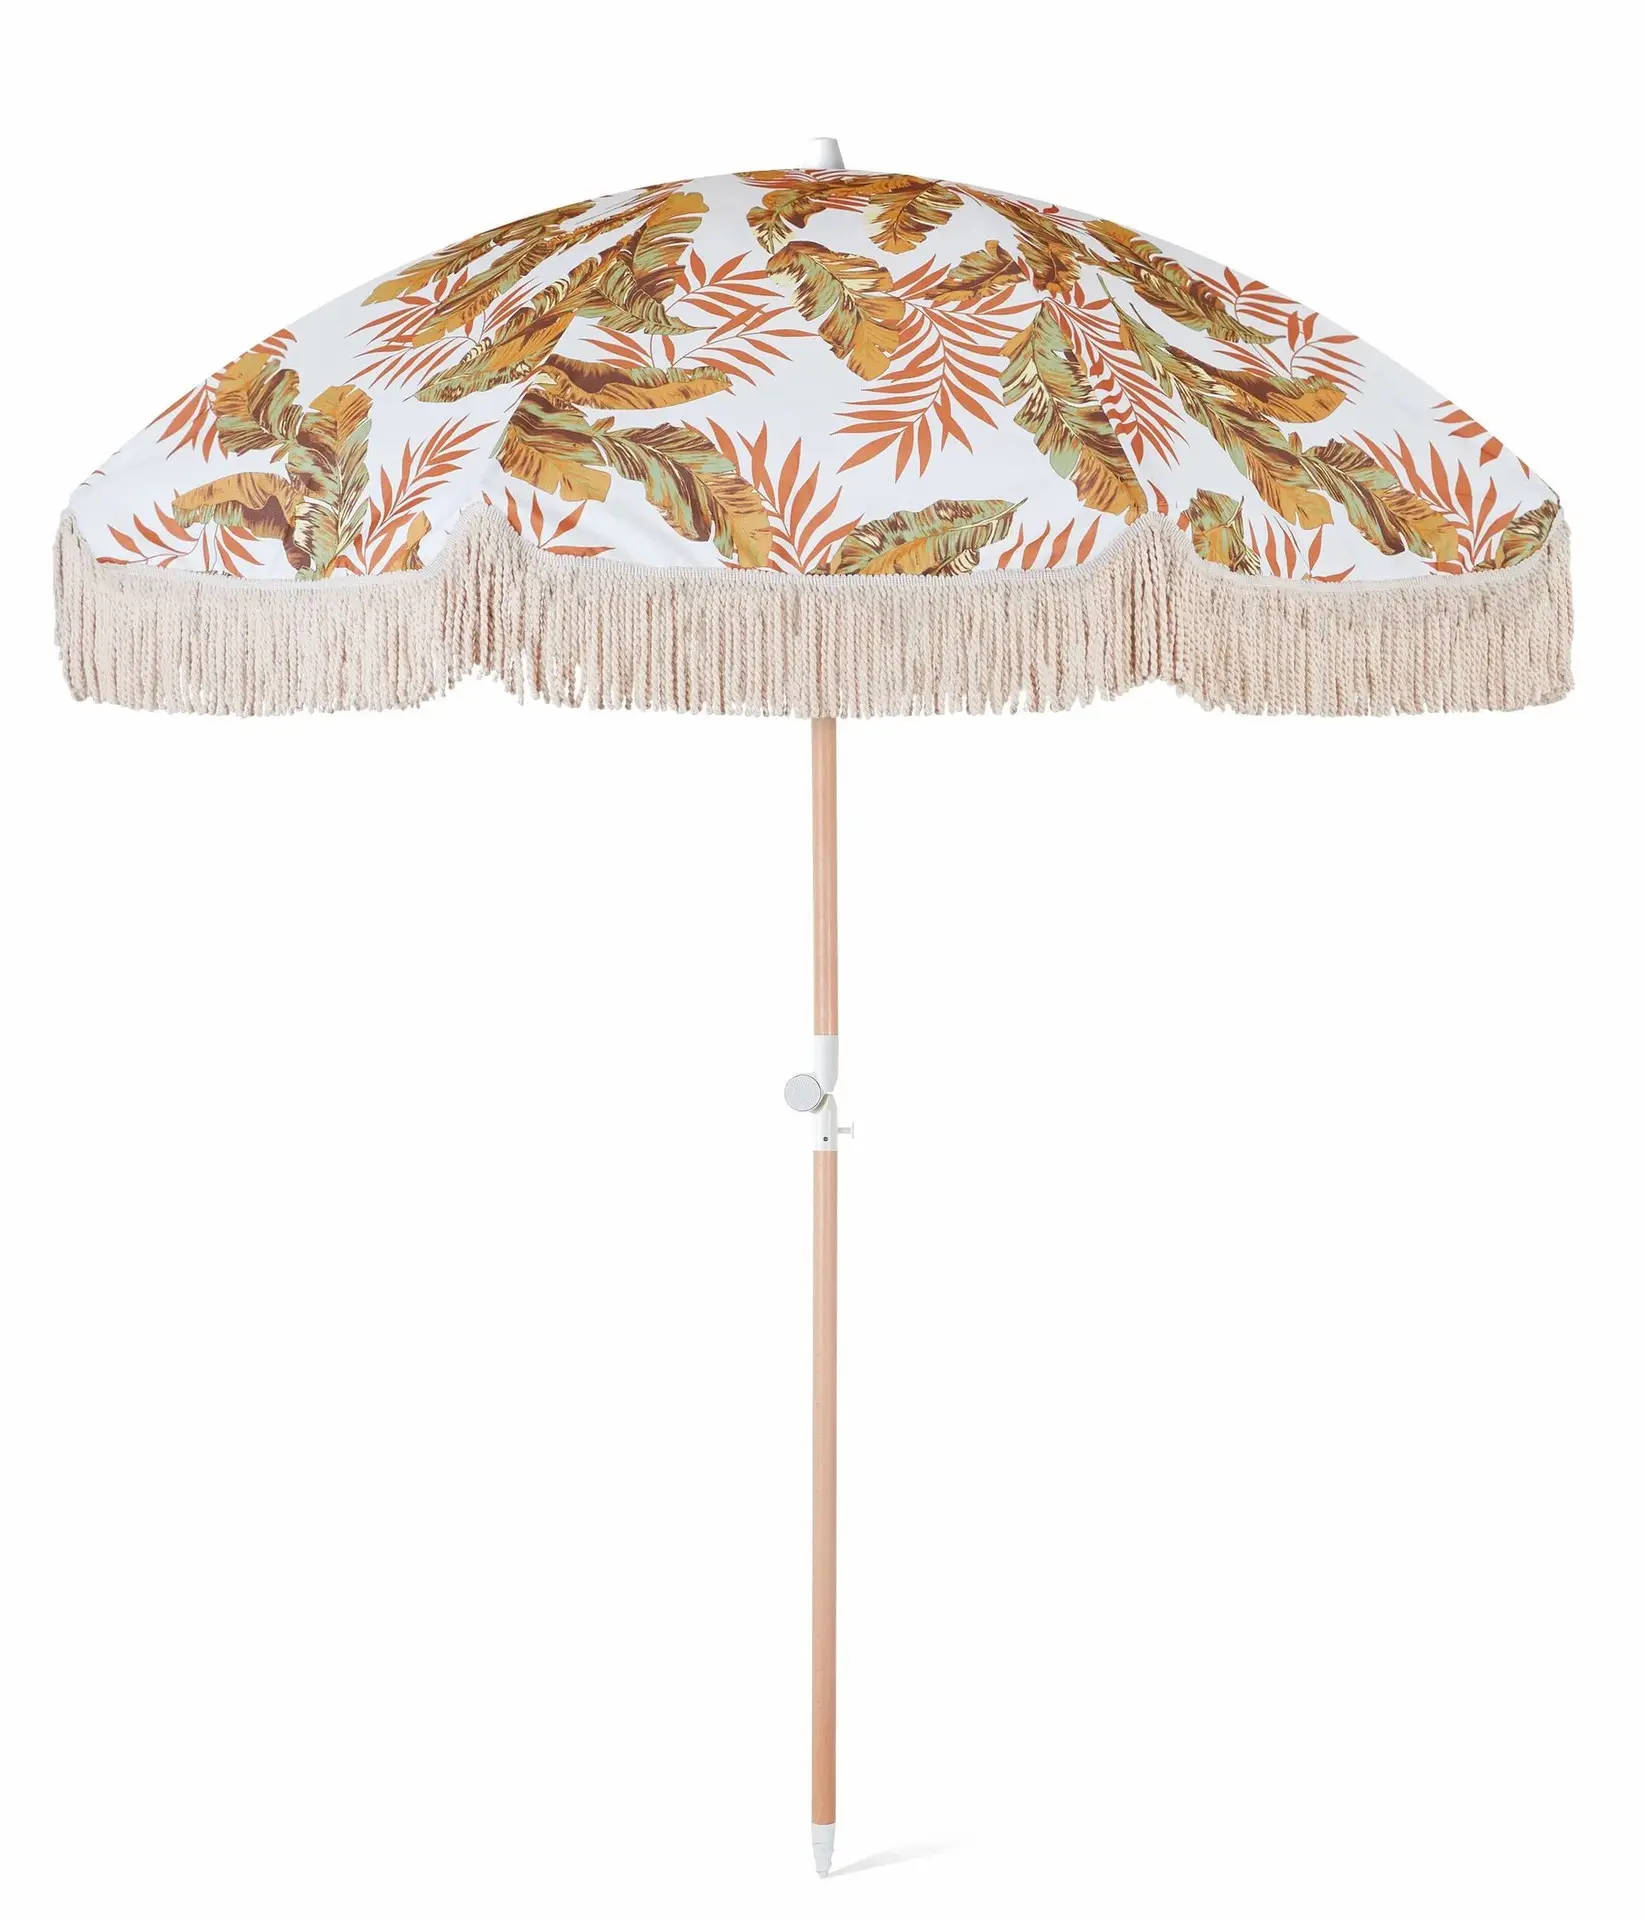 Пляжный зонт для песка, лучший Пляжный зонт с заостренным дном и 100% защитой от УФ-лучей, деревянный пляжный зонт